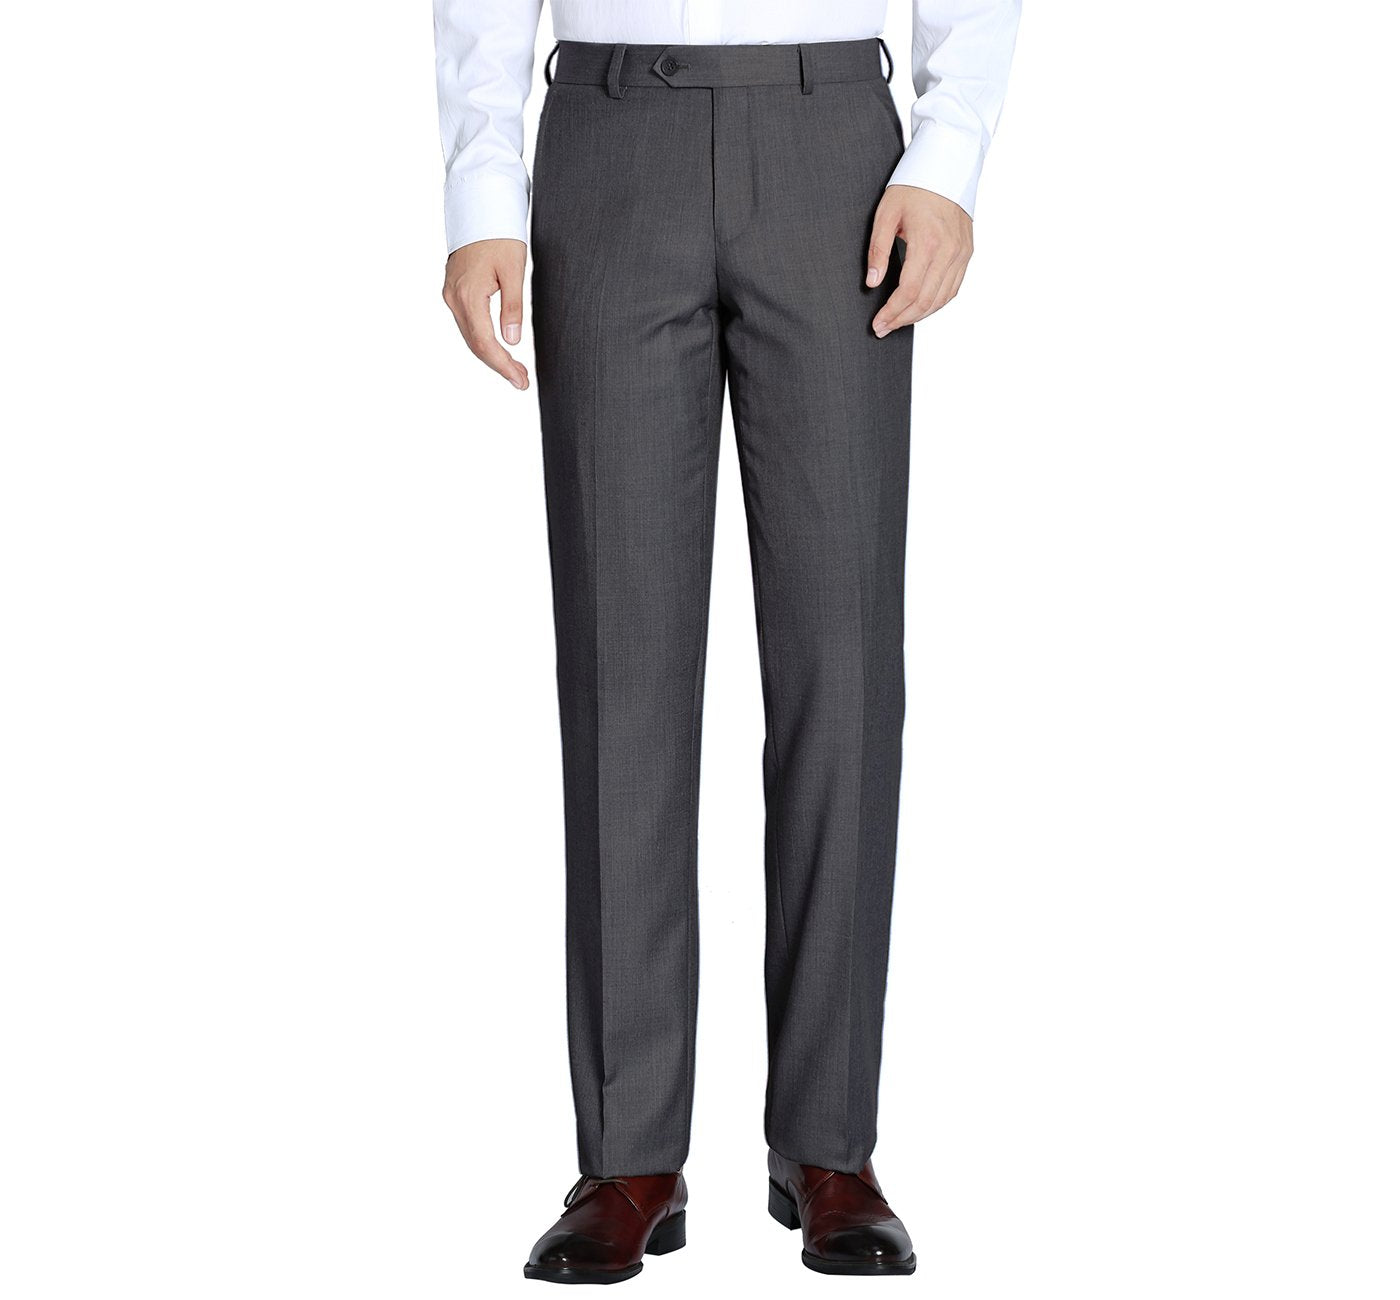 202-1 Men's Charcoal Flat Front Suit Separate Pants